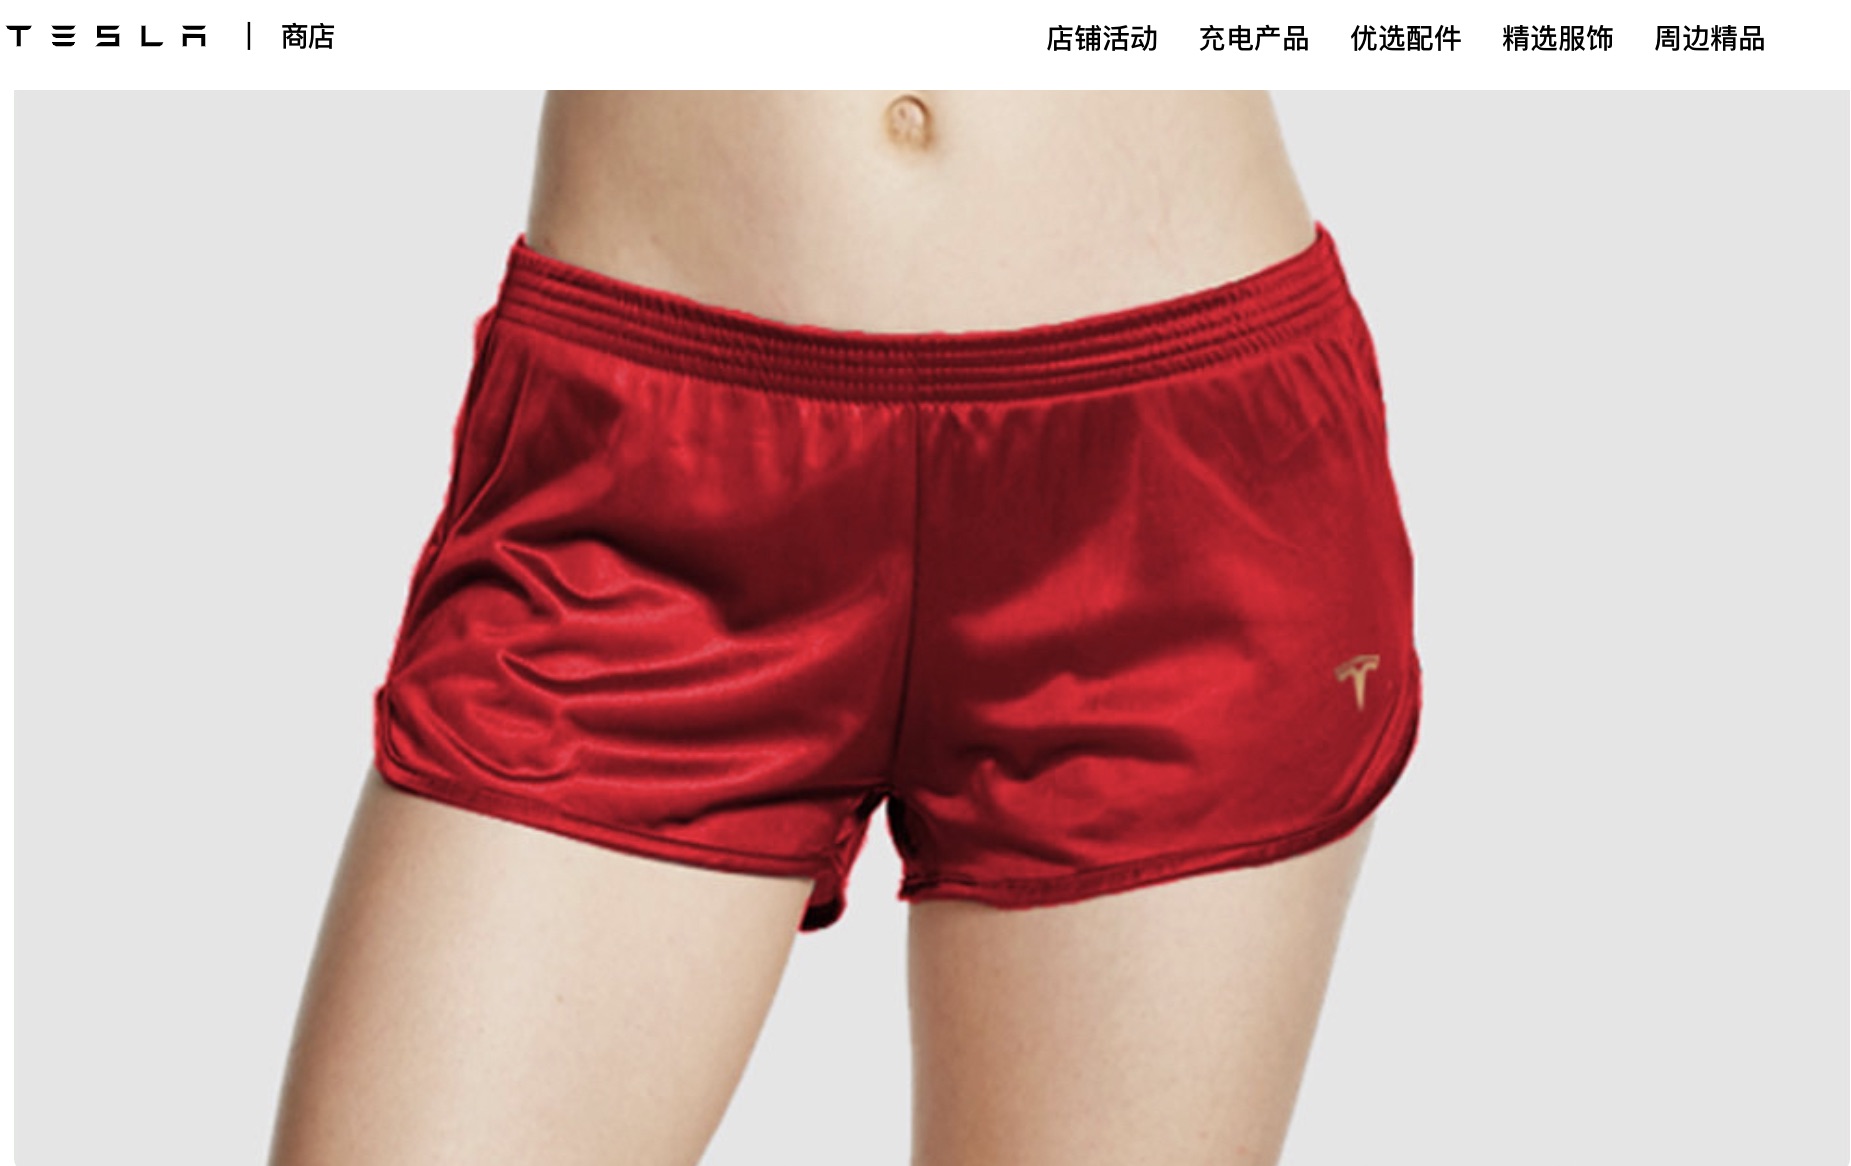 Шорты Tesla Shorts теперь доступны в Китае по цене 420 юаней